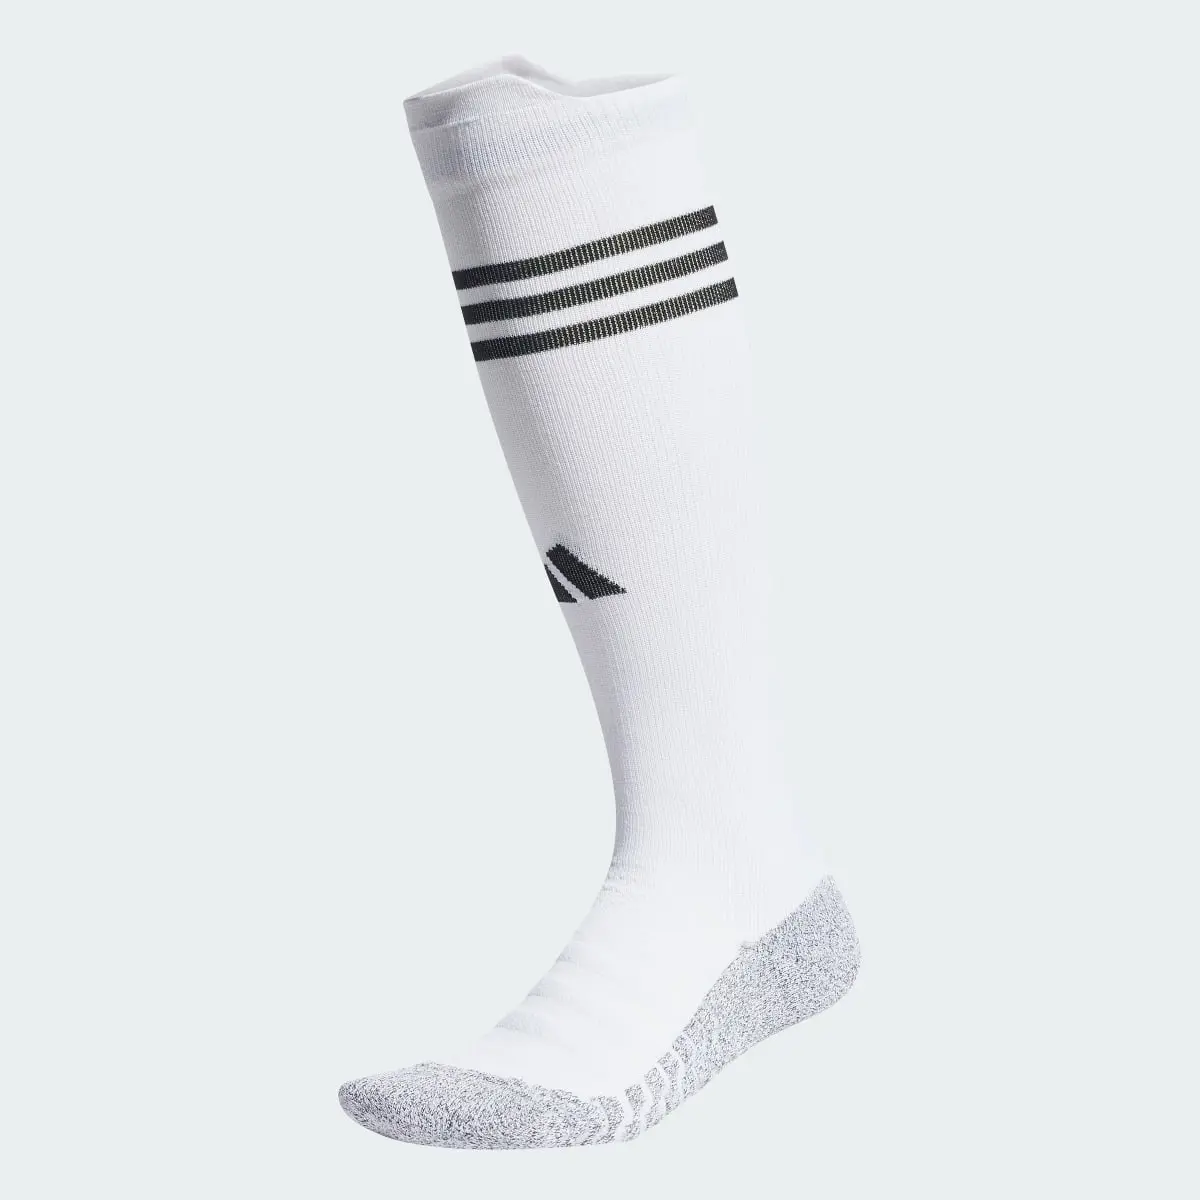 Adidas All Blacks Rugby Knee Socks. 2